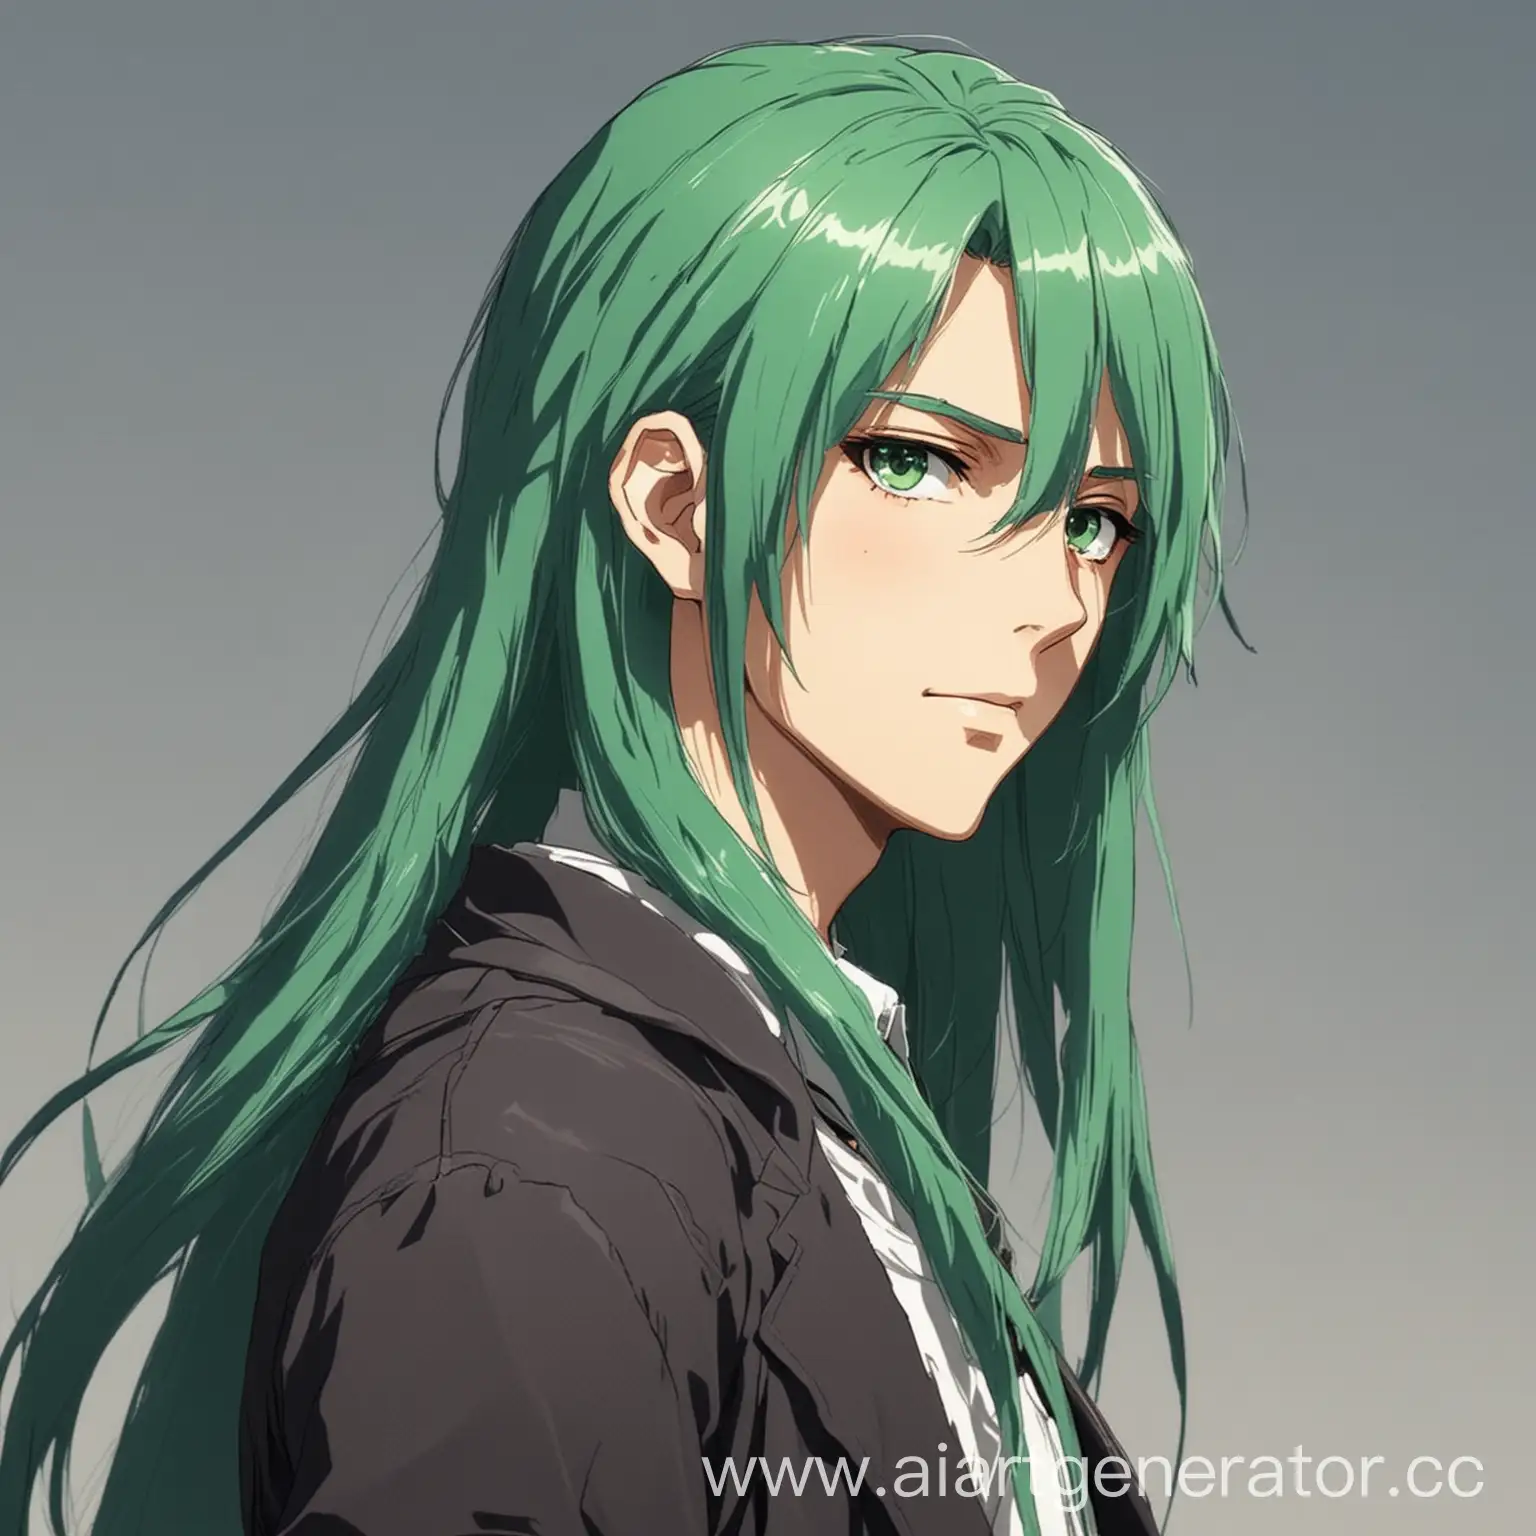 парень с длинными зелеными волосами худого телосложения в стиле аниме
